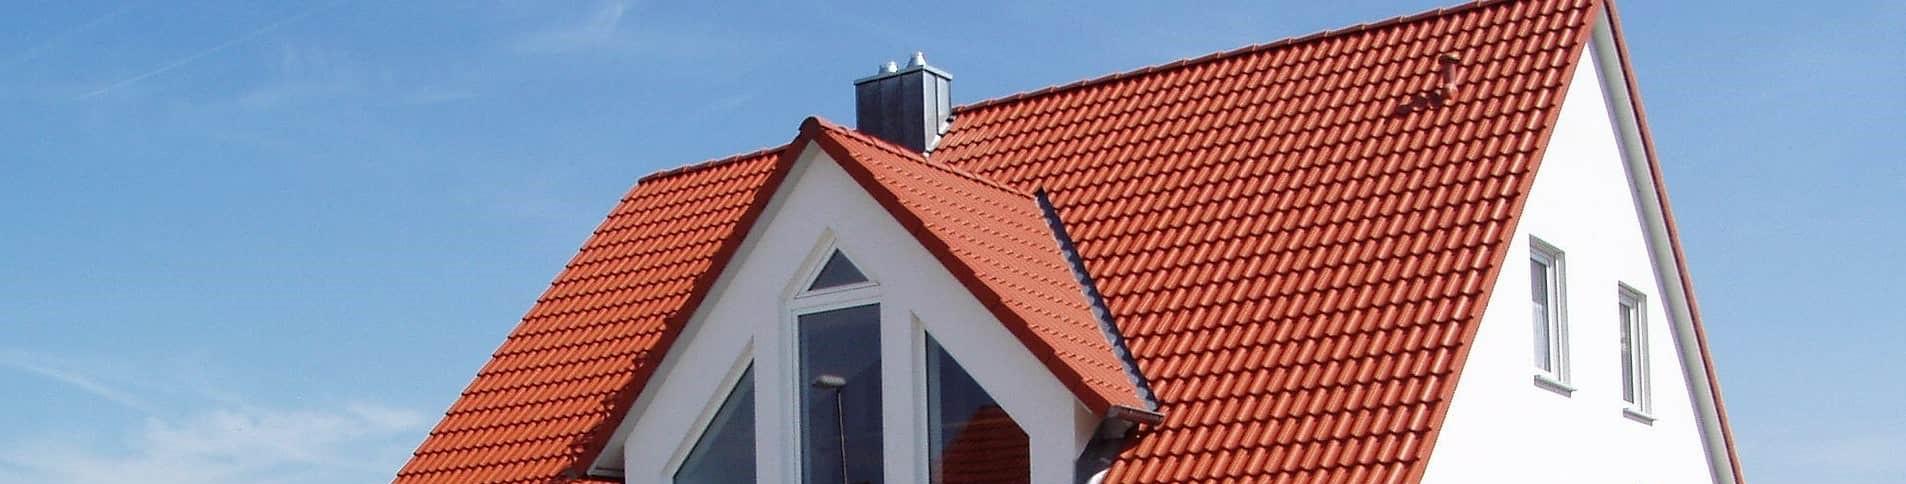 Hermans - zoek dakwerken op wazaa